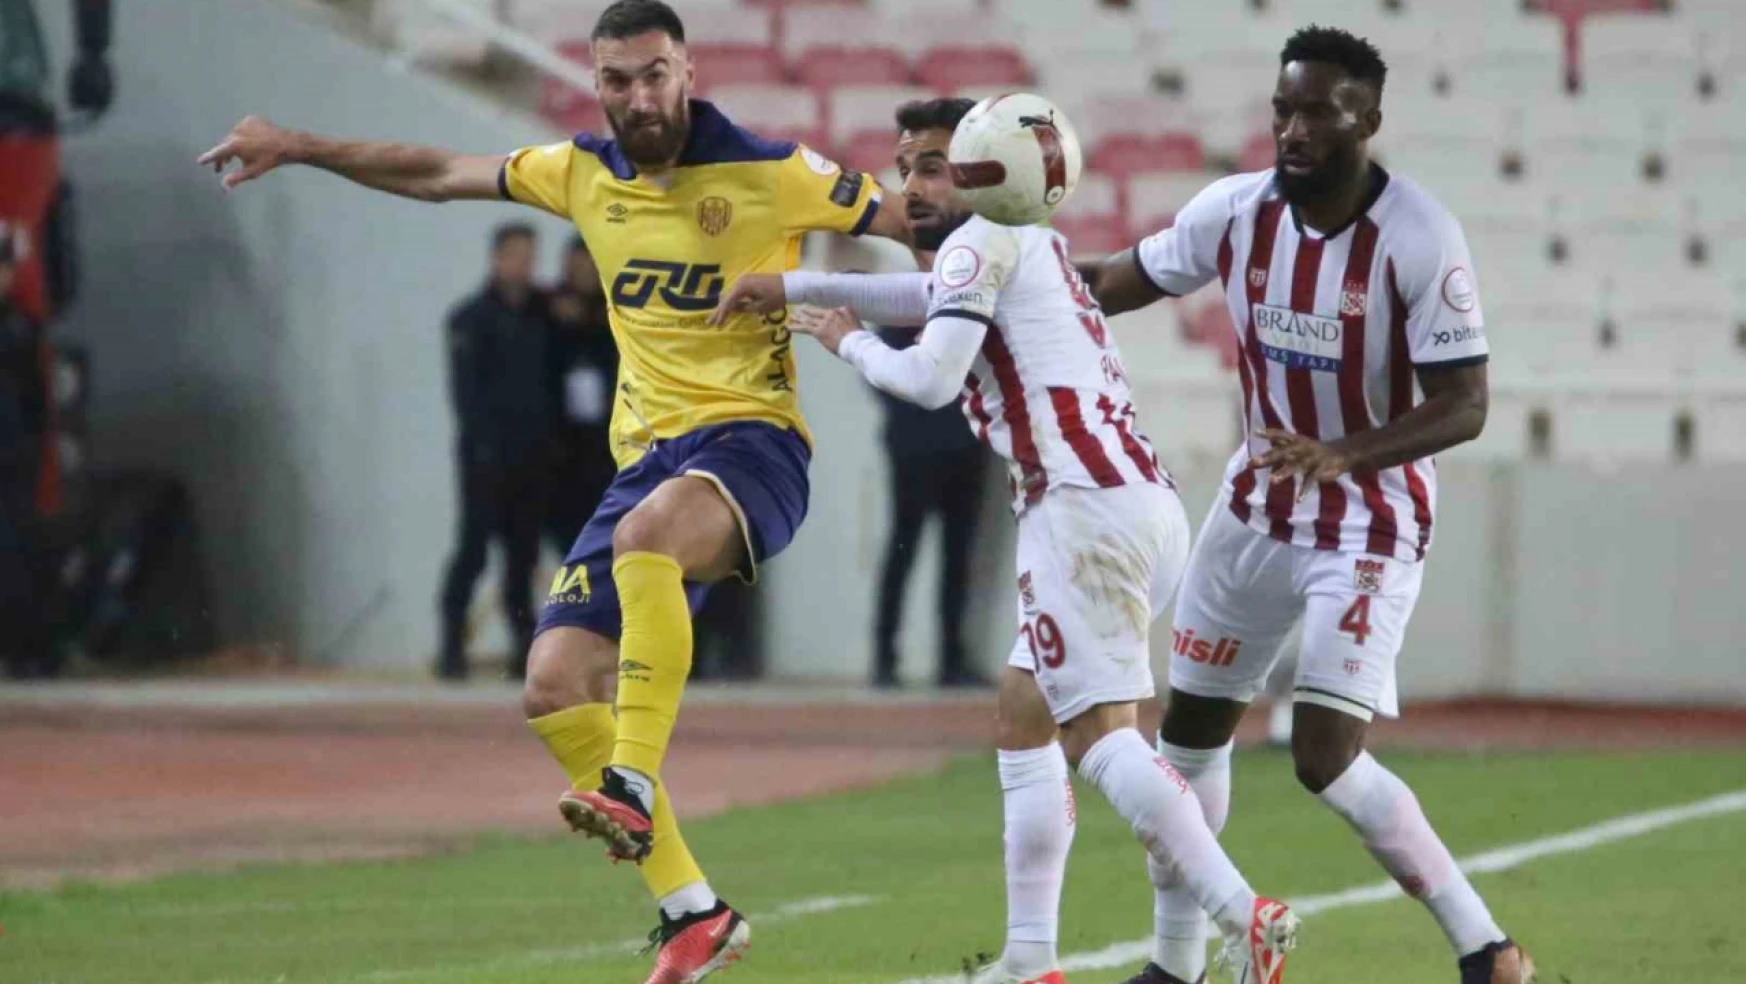 Trendyol Süper Lig: E.Y Sivasspor: 1 - MKE Ankaragücü: 1  (İlk yarı)